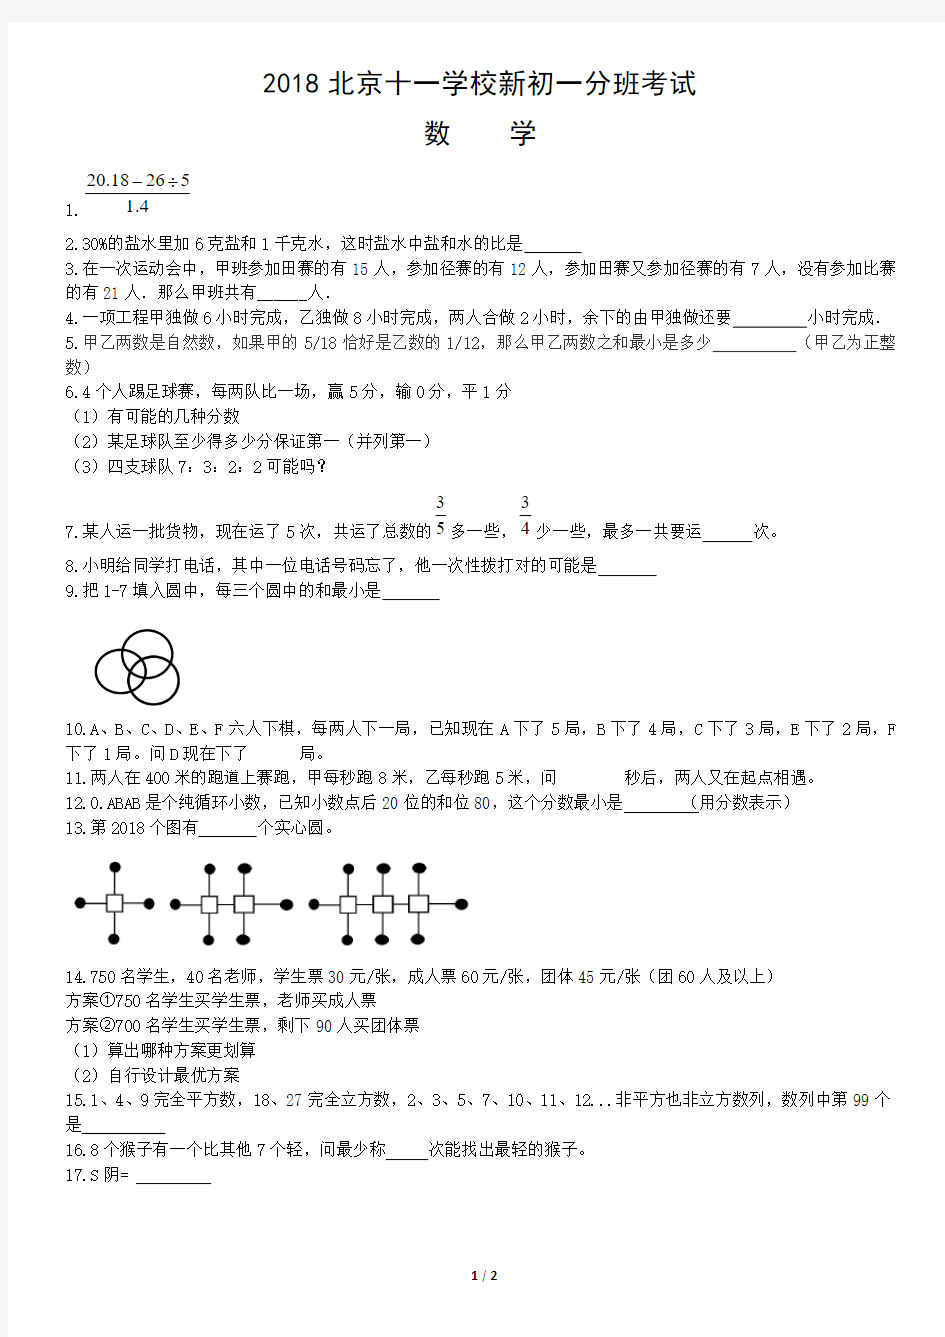 2018北京十一学校新初一分班考试数学(1)